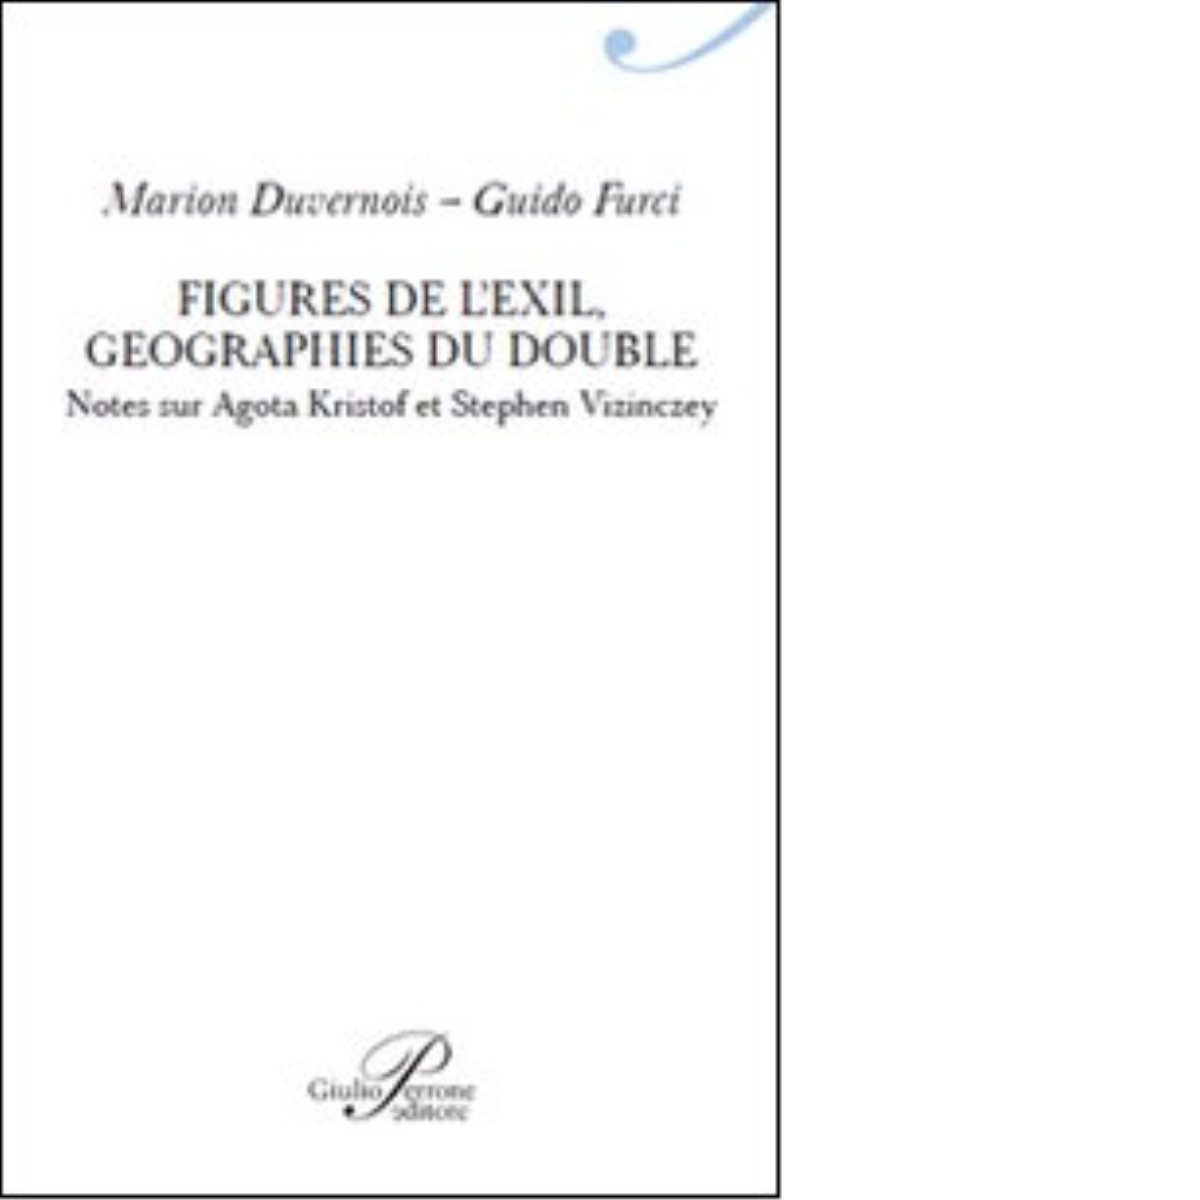 Figures de l'exil. Geographie du double - Marion Duvernois - Perrone, 2014